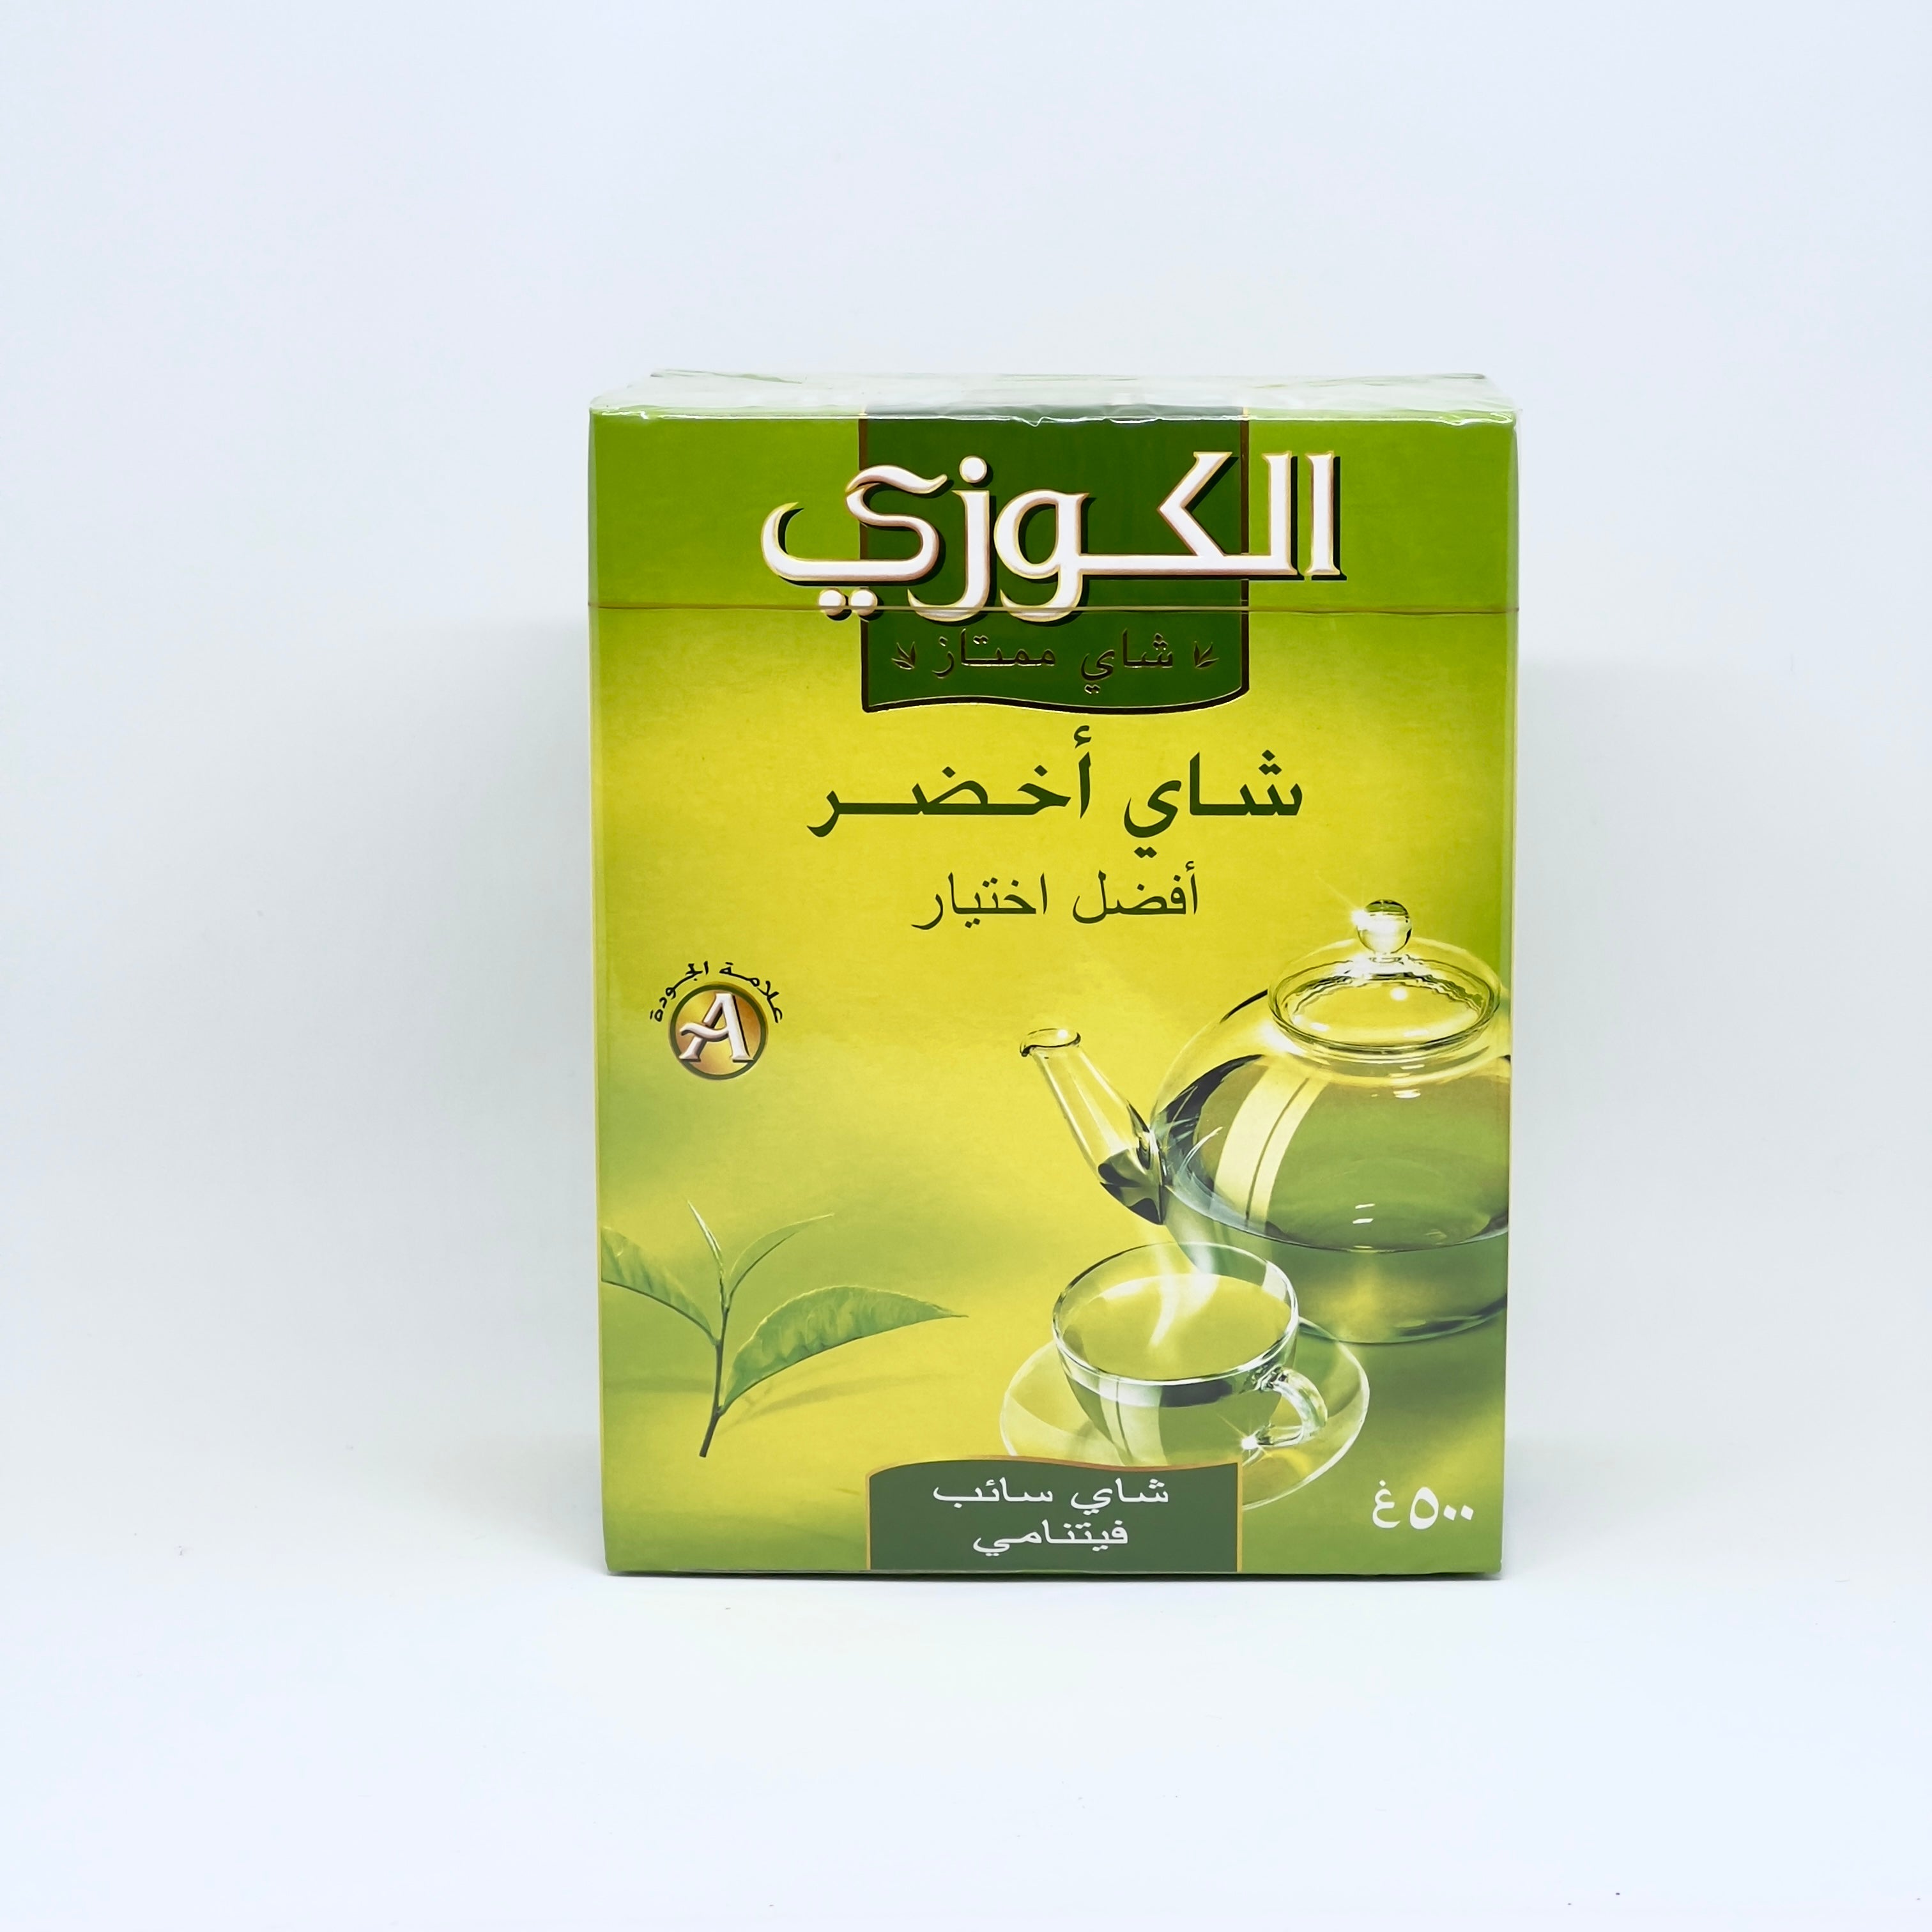 ALOKOZAY Pure Green Tea Leaves 500g